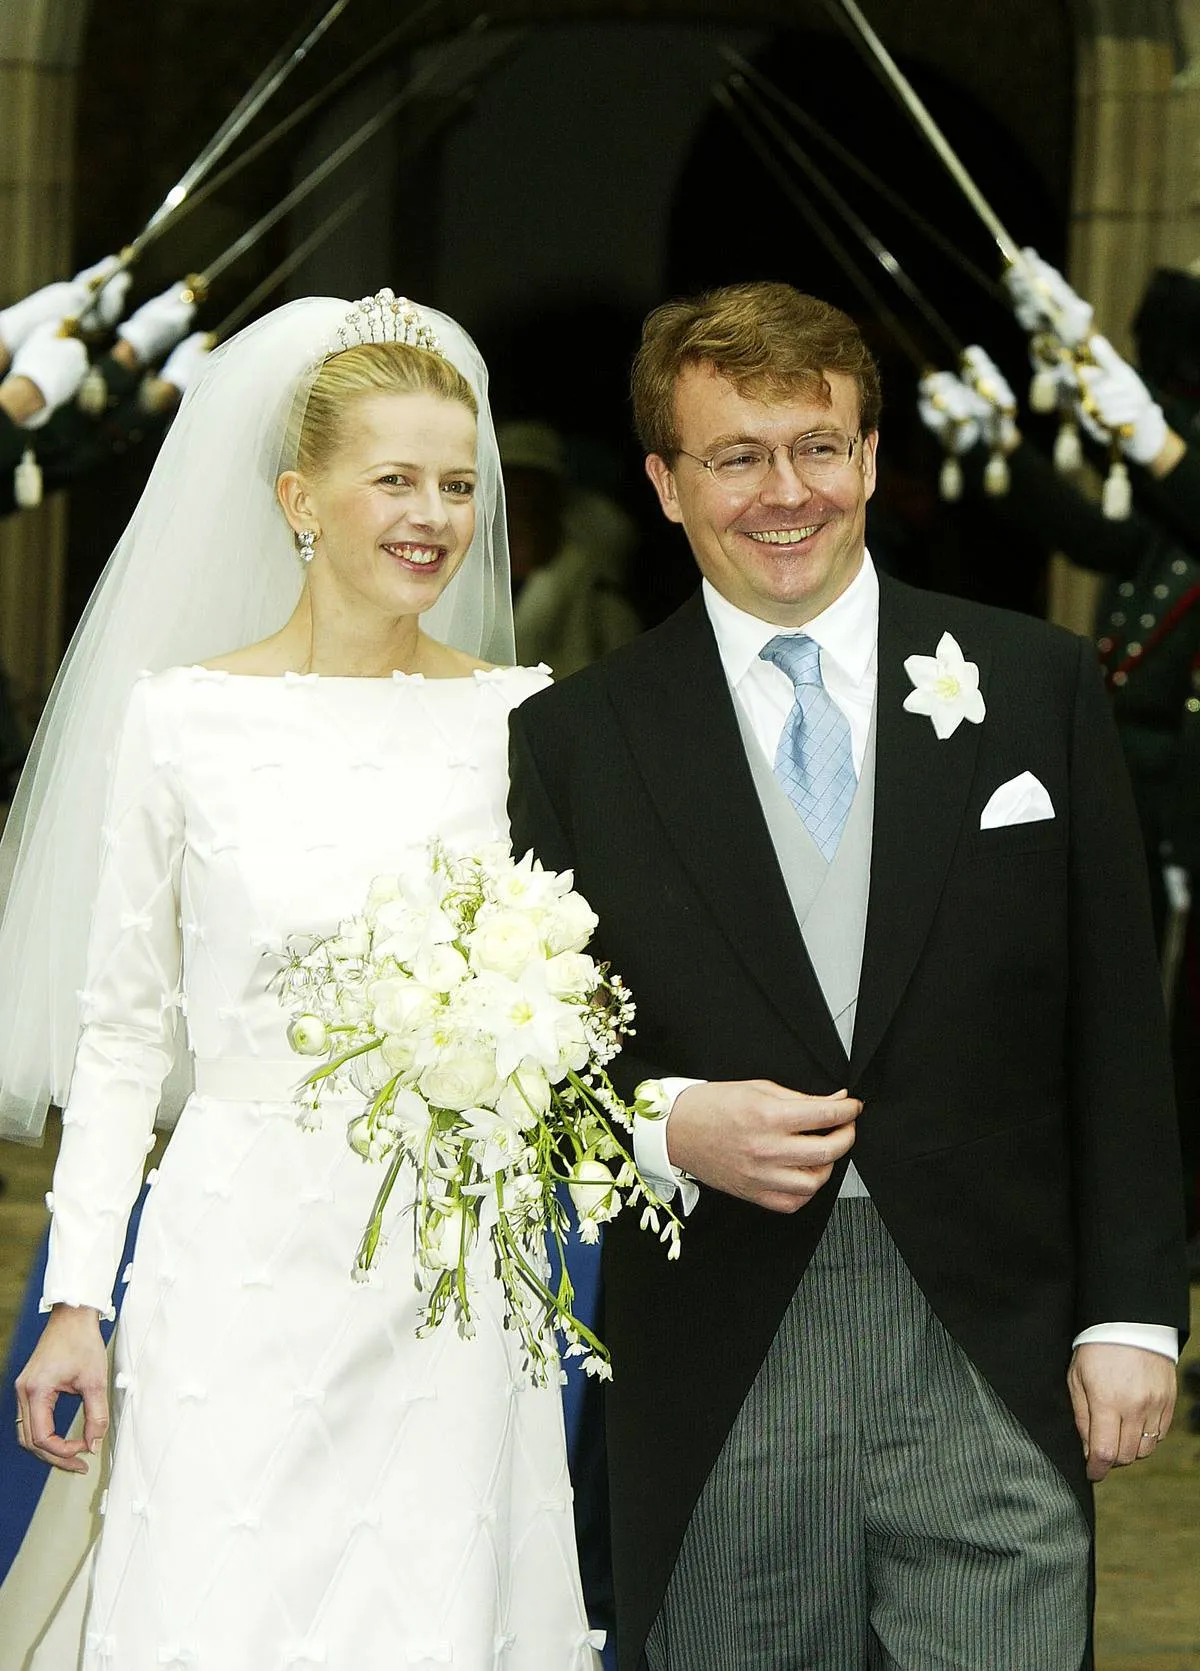 Netherlands: Wedding Of Prince Johan Friso & Mabel Wisse Smit